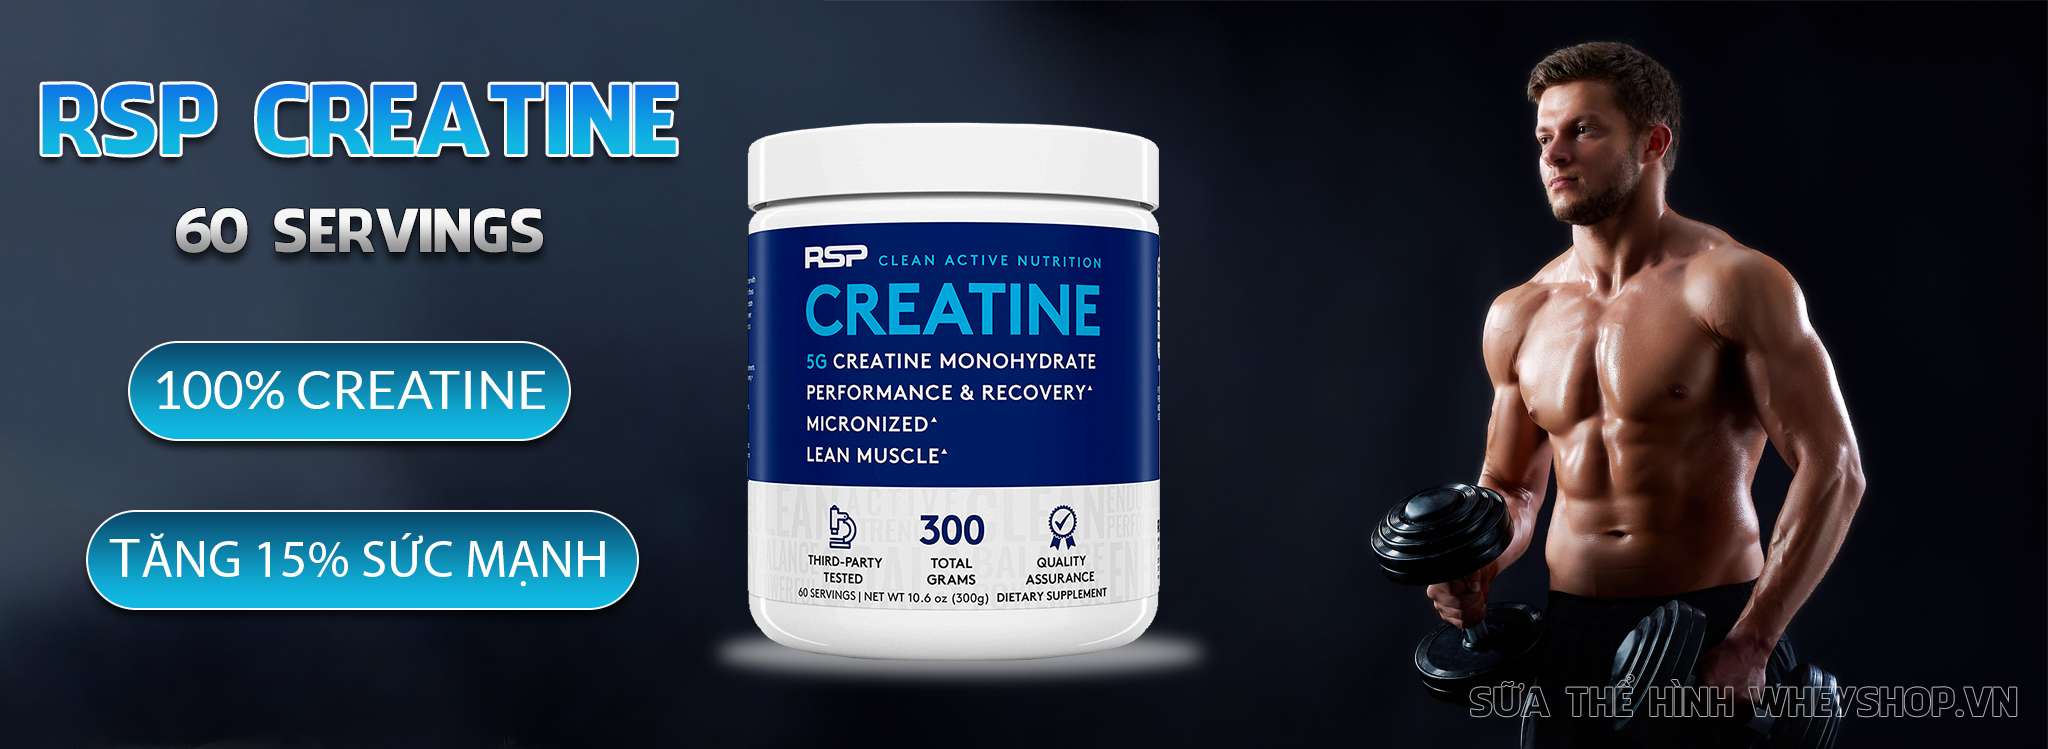 Sản phẩm RSP Creatine 60 lần sử dụng tăng sức mạnh, sức bền, cơ bắp hiệu quả. RSP Creatine nhập khẩu chính hãng, uy tín, giá rẻ tại Hà Nội TPHCM